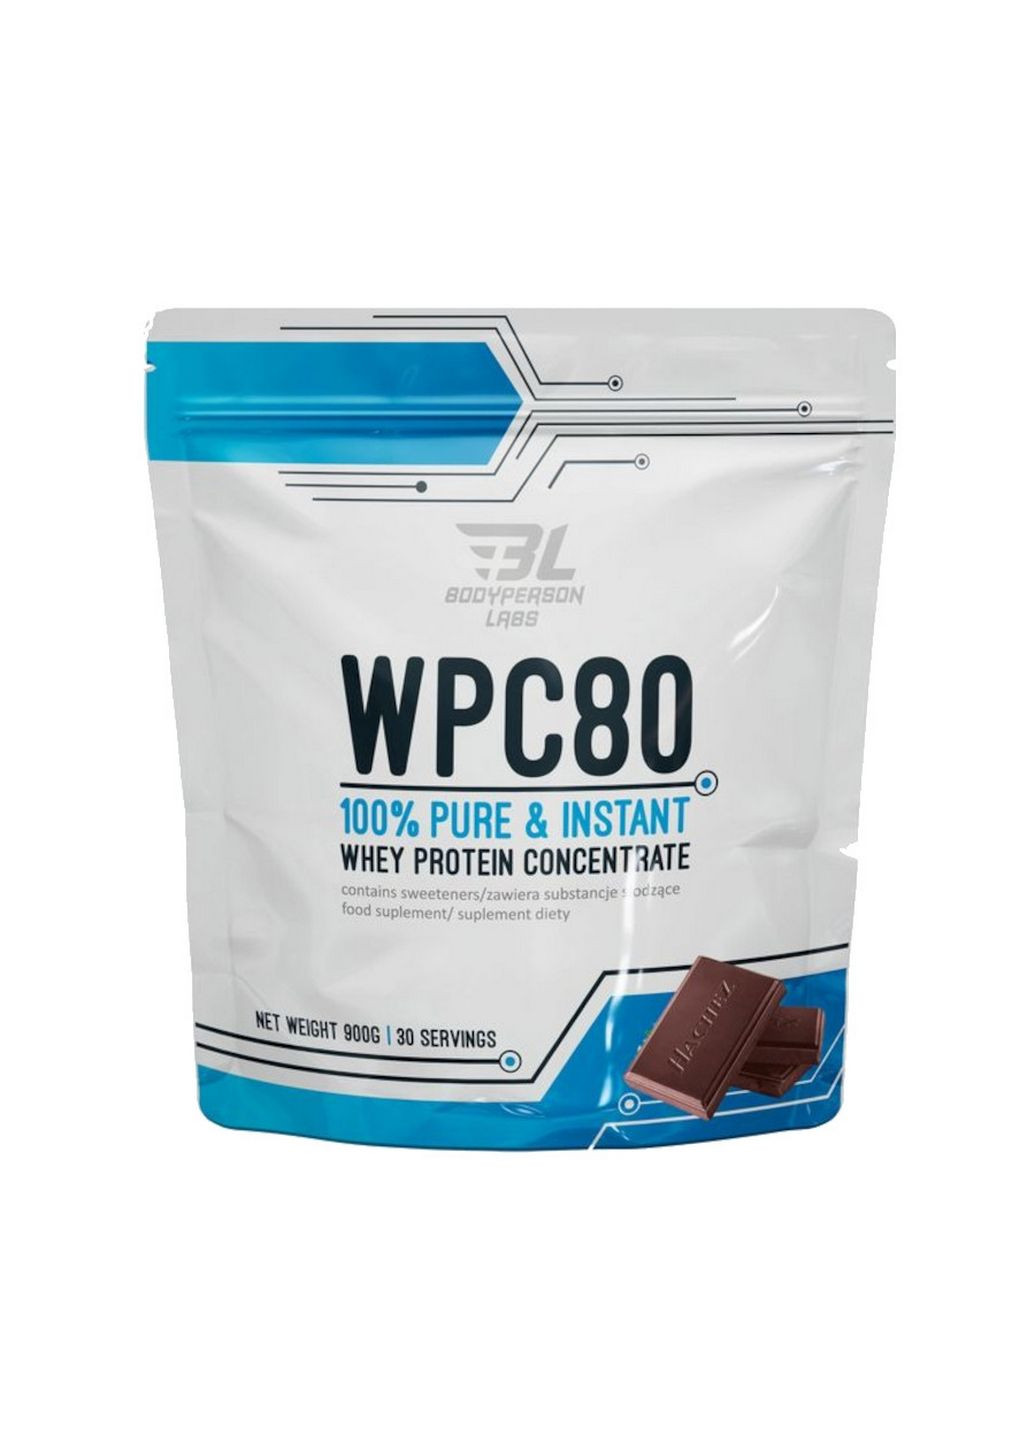 Протеин Labs WPC80, 900 грамм Шоколад Bodyperson Labs (293339880)